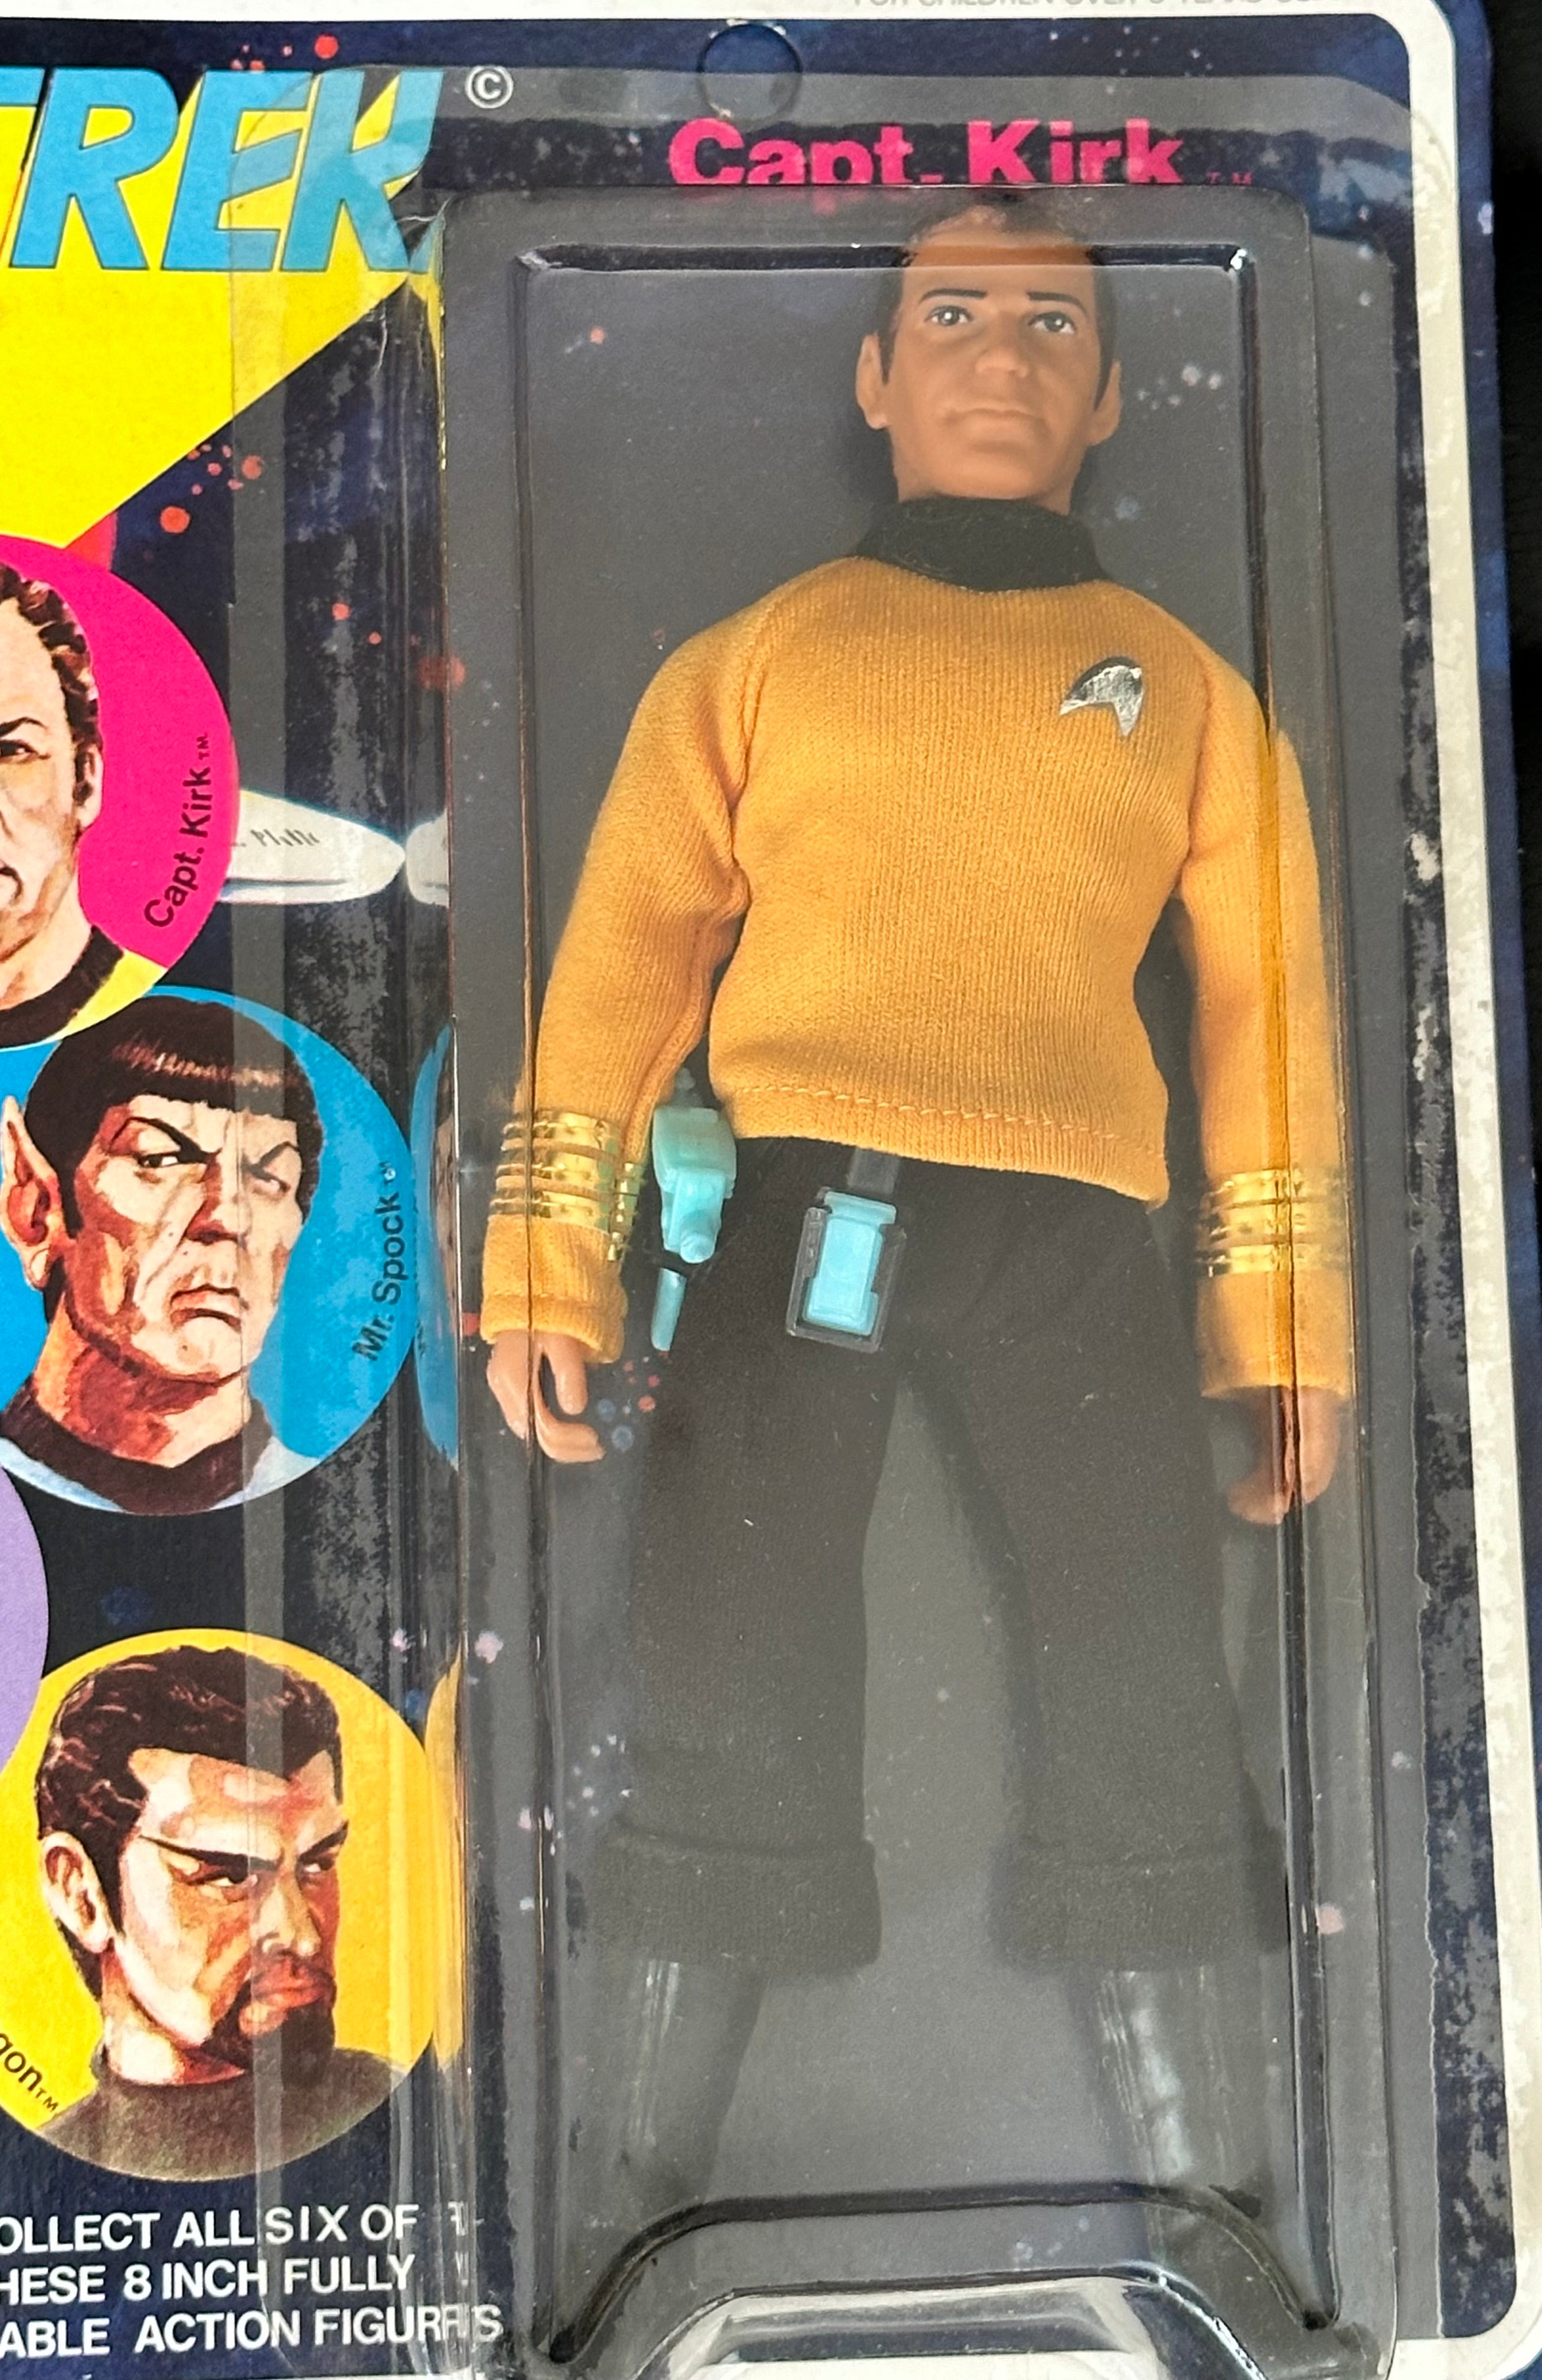 Star Trek Captain Kirk original Mego figure in package 1974